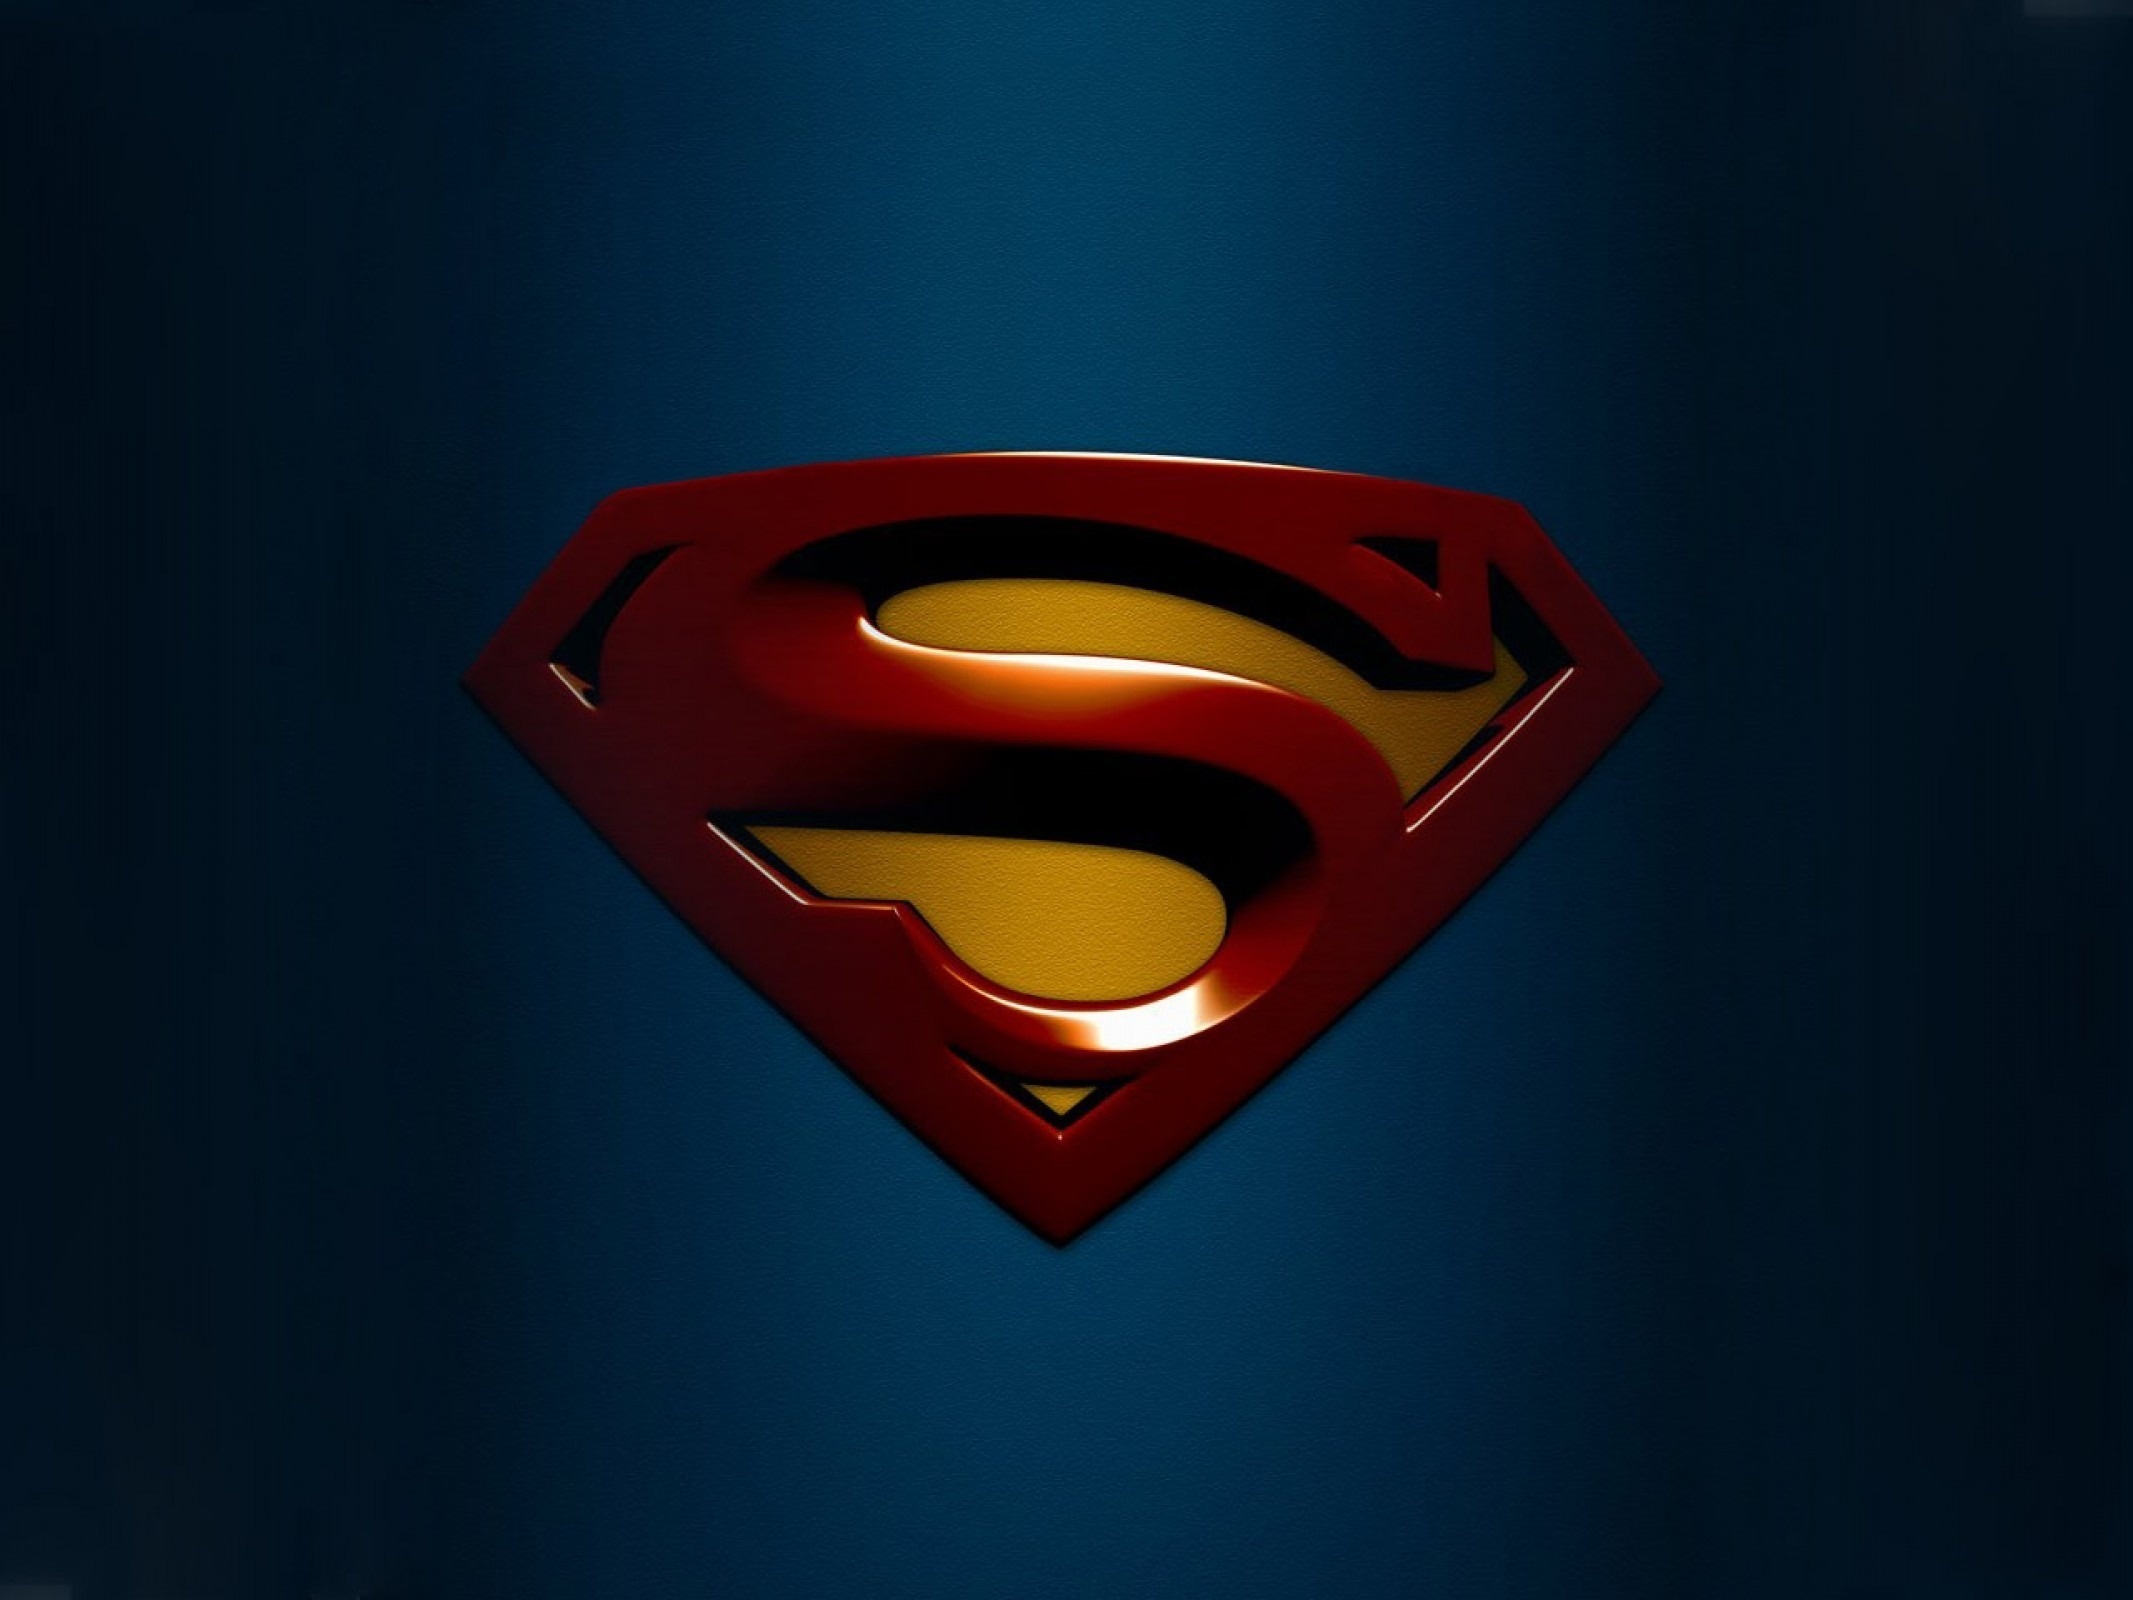 Wallpaper Superman logo graphics desktop wallpaper 187 3D